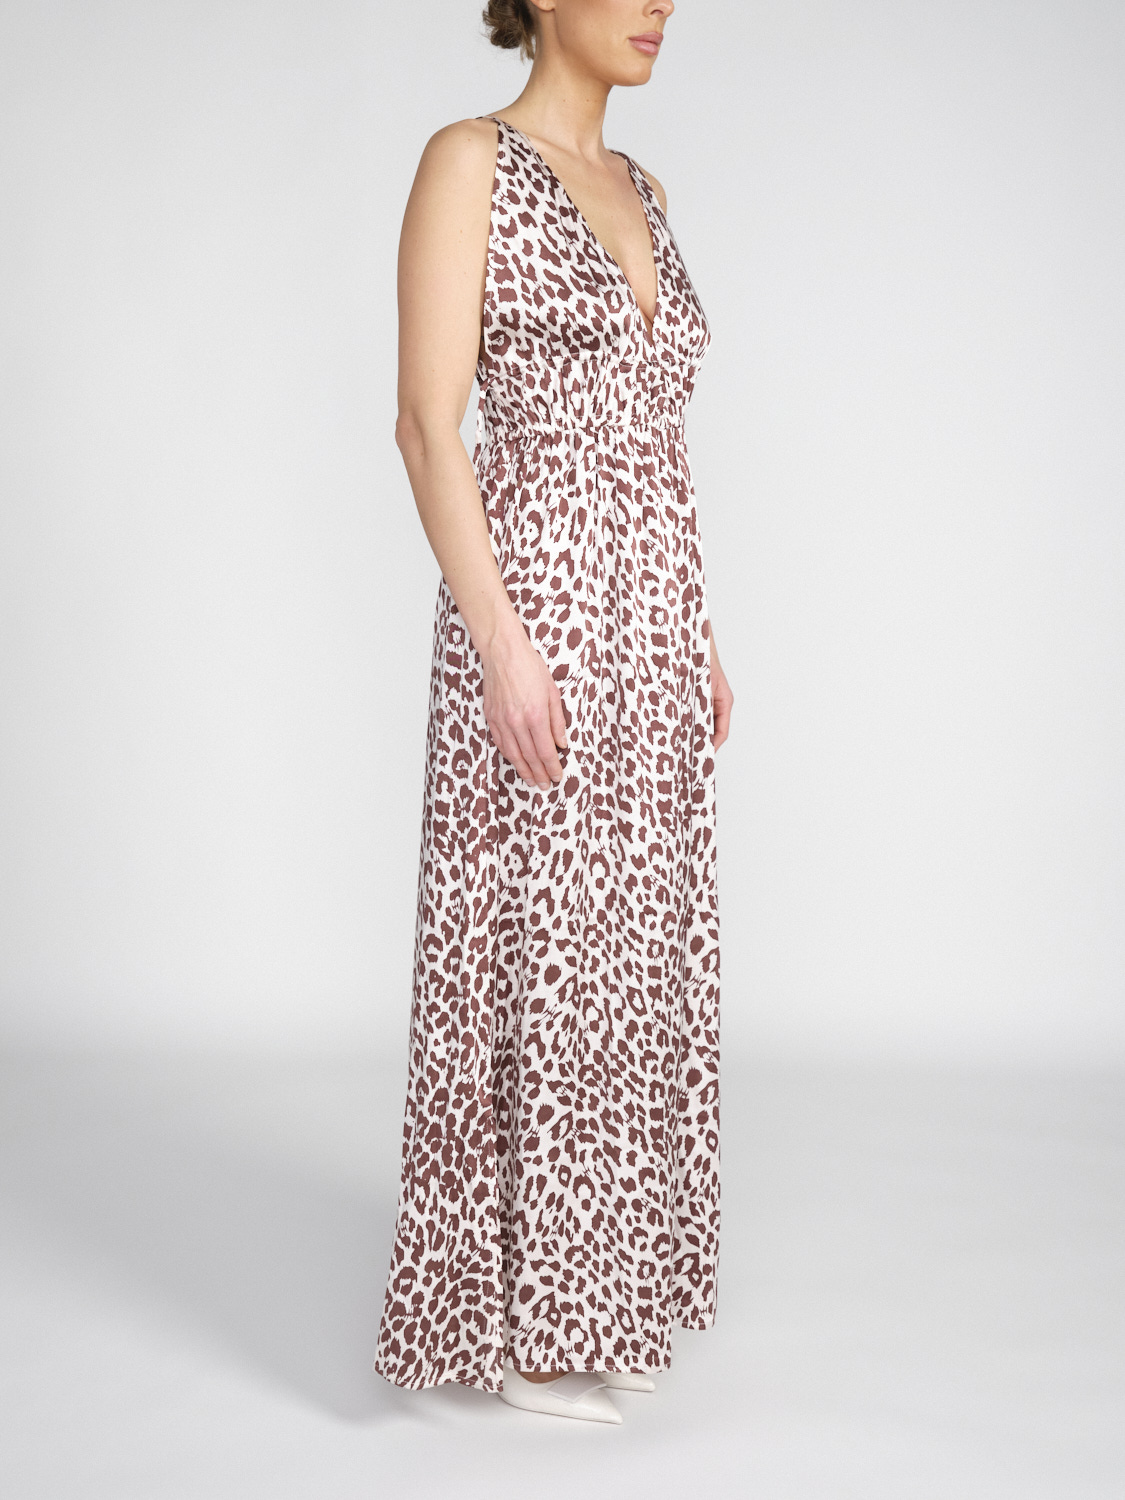 friendly hunting Prontah Cheetah - Silk midi dress with leopard print  beige S